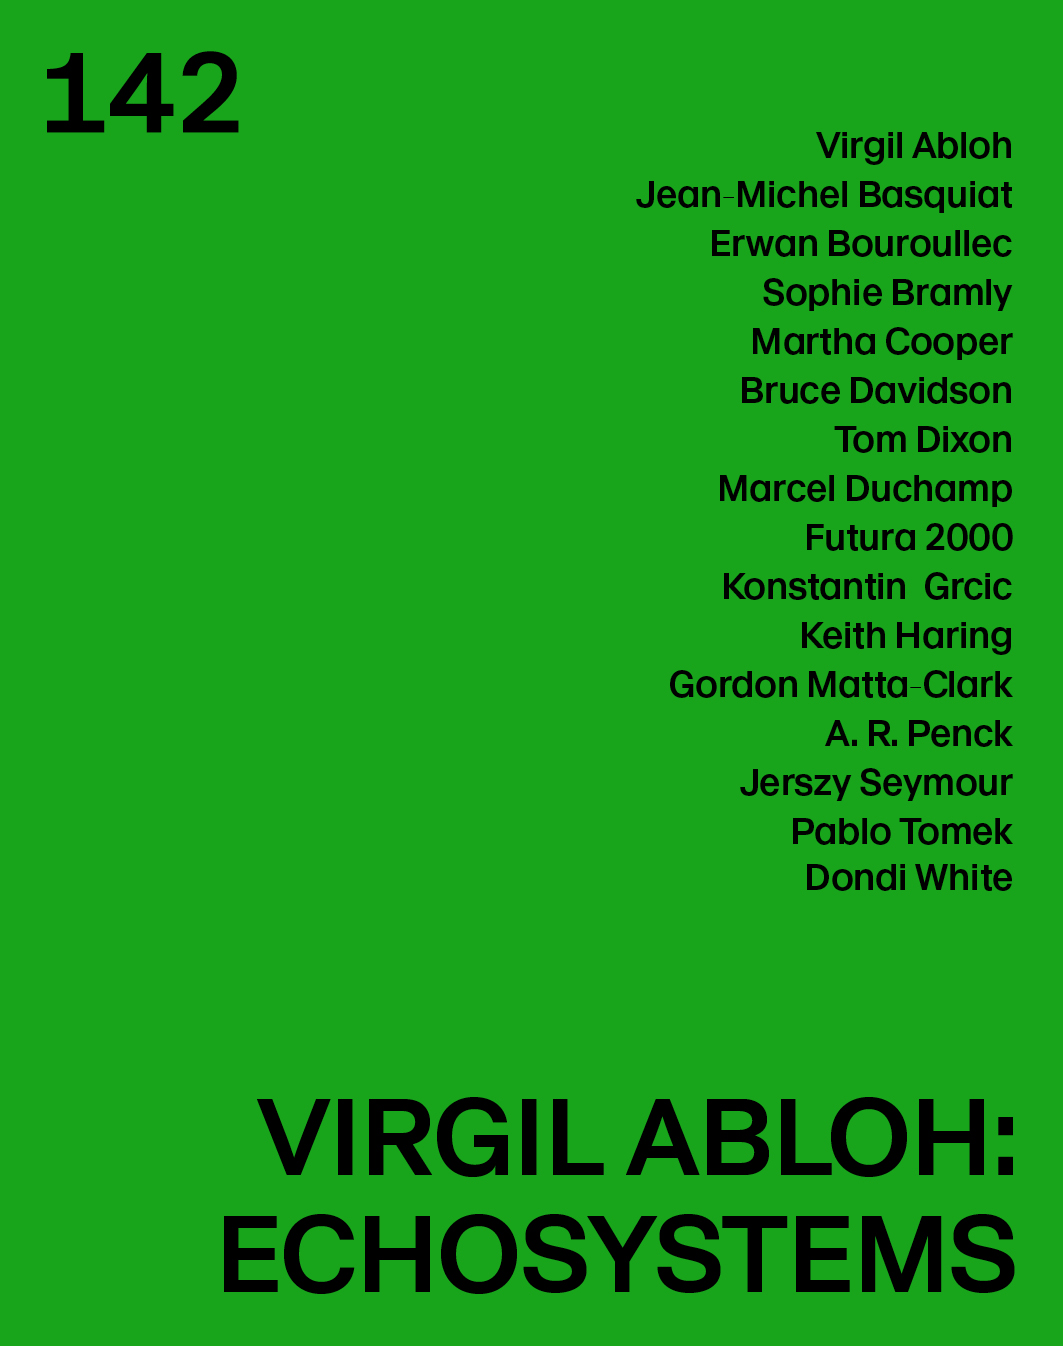 Virgil Abloh dévoile une nouvelle installation sonore en plein Paris